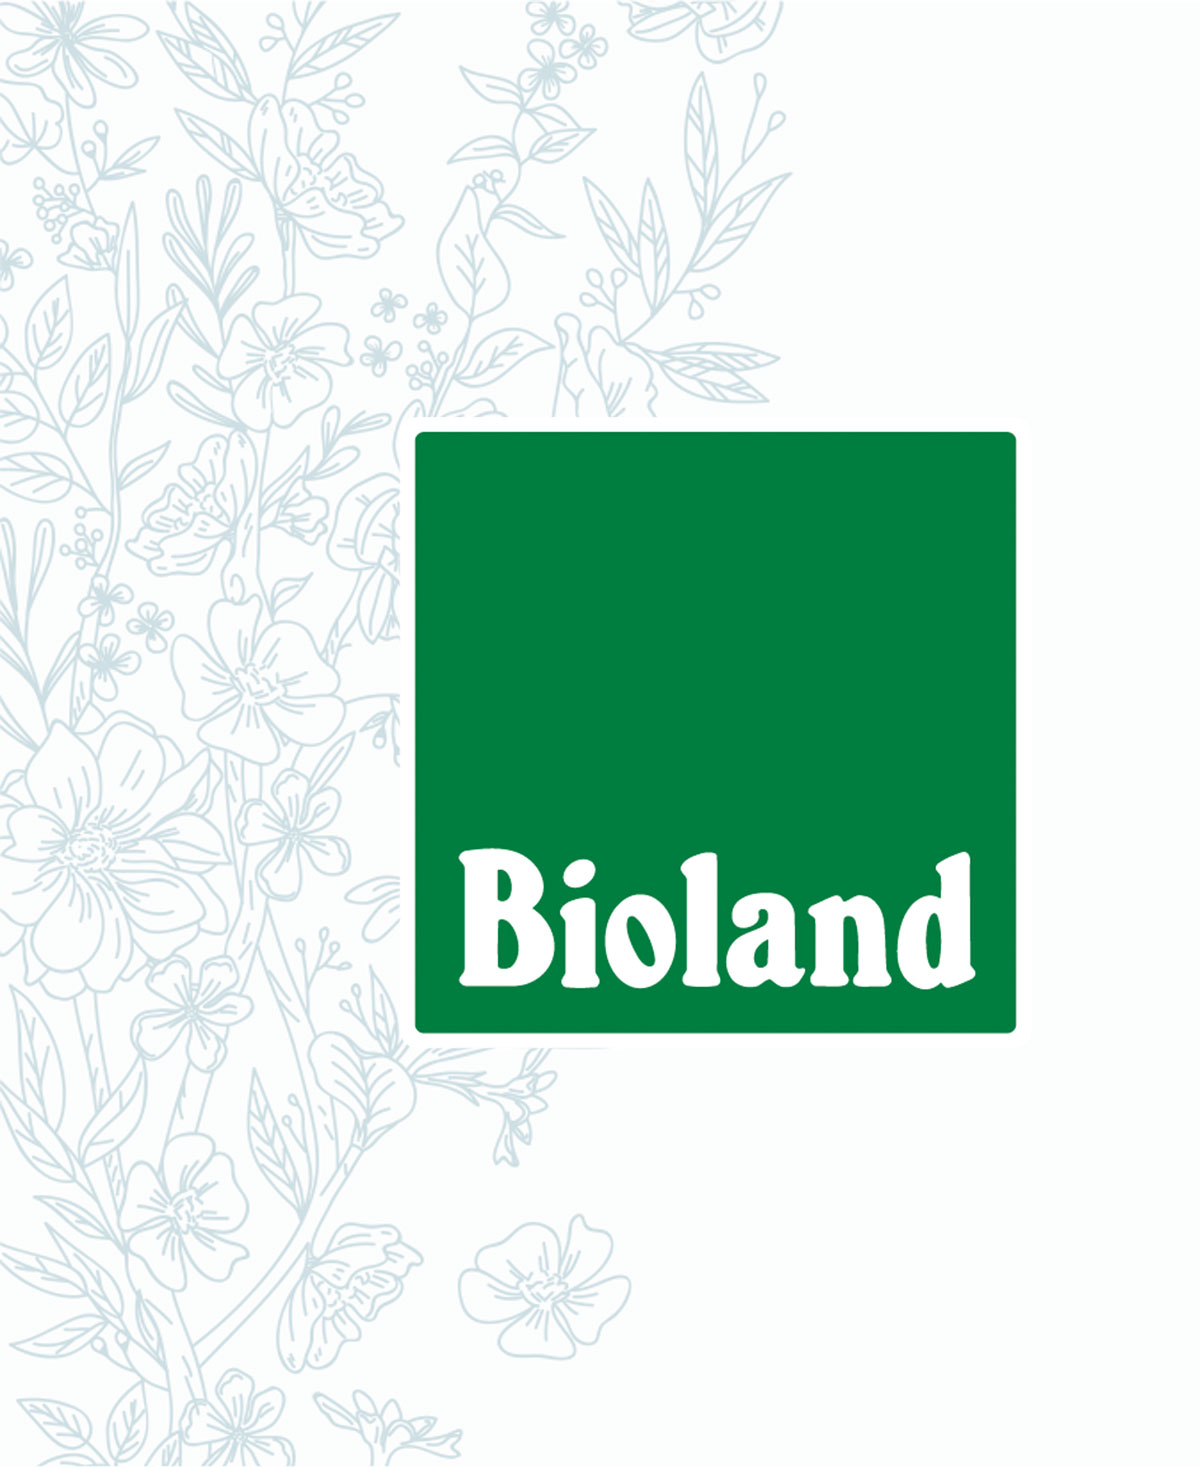 Bienen mieten - Imkern nach Bioland Richtlinien - für das Wohl unserer Bienen - unser Produkt: Bio Honig aus deutscher Landwirtschaft DE-ÖKO-006